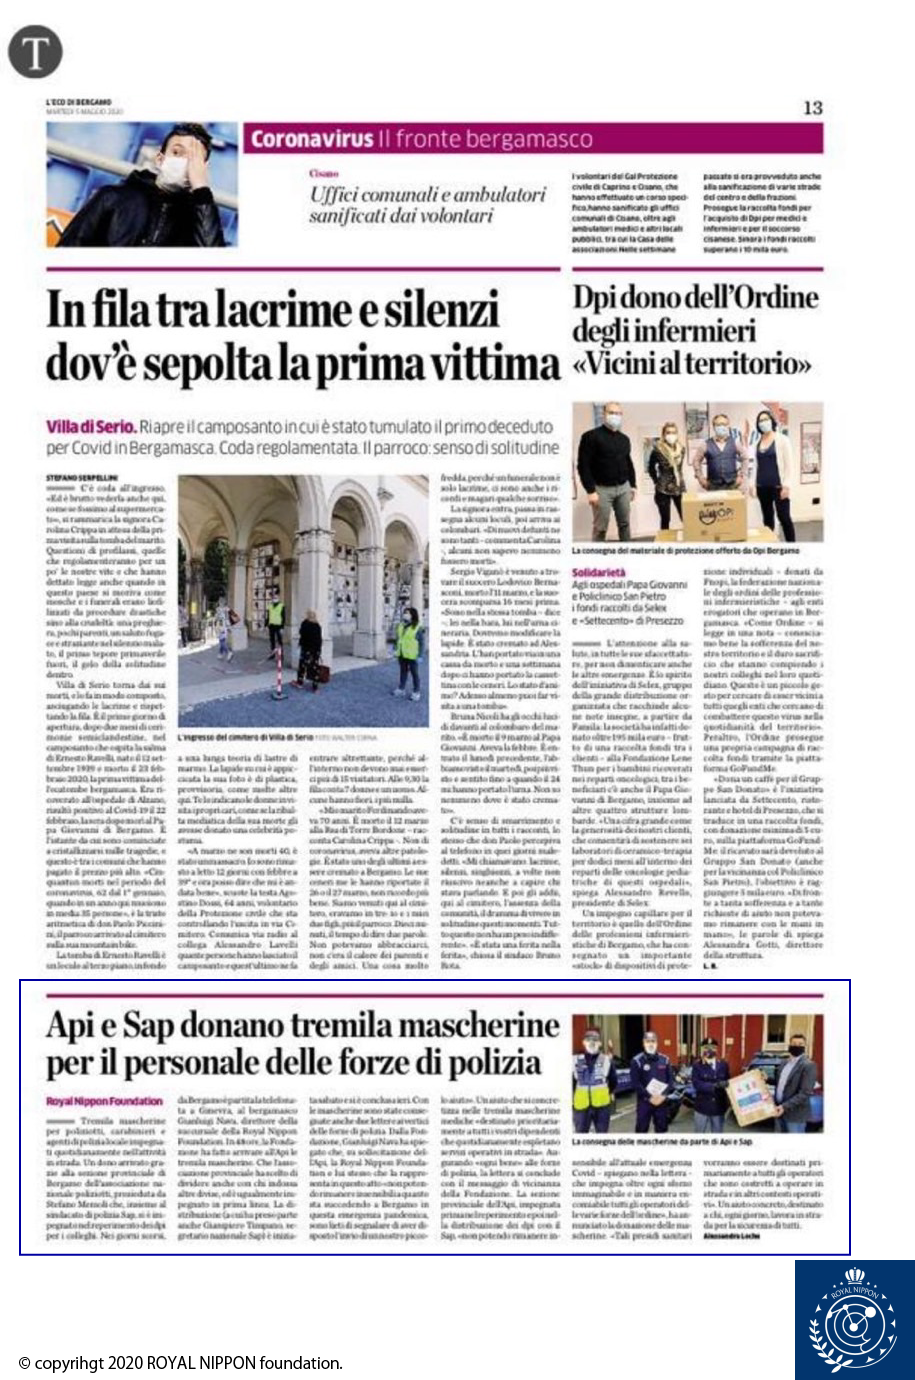 コロナウィルス感染予防支援活動がイタリア現地新聞記事・ニュースに掲載されました。(2020年 4月)